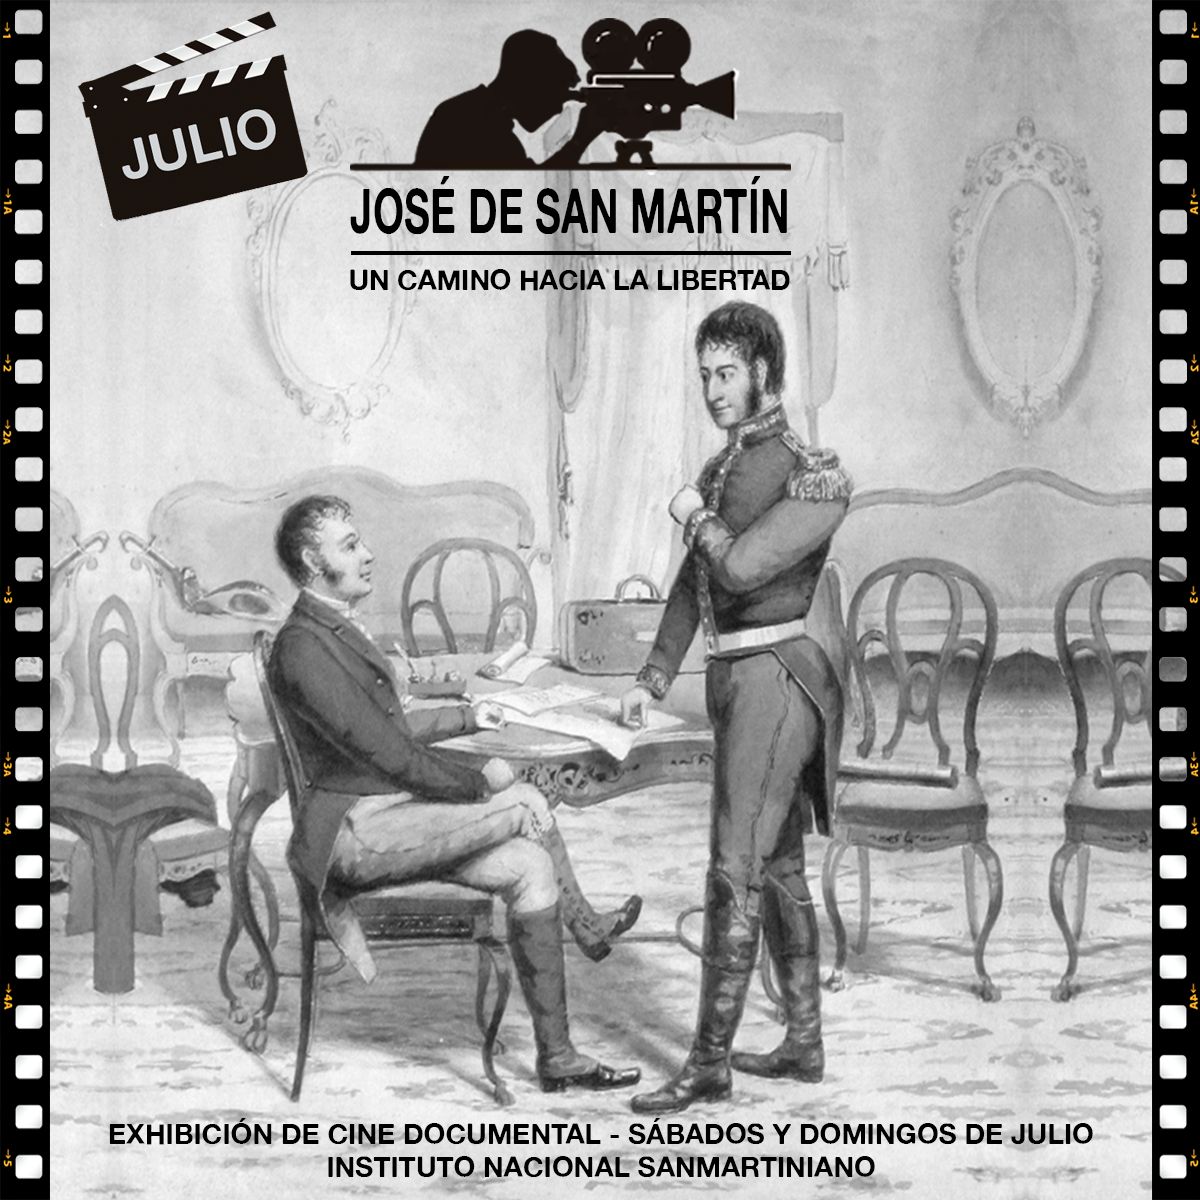 José de San Martín. Un caminio hacla la Libertad